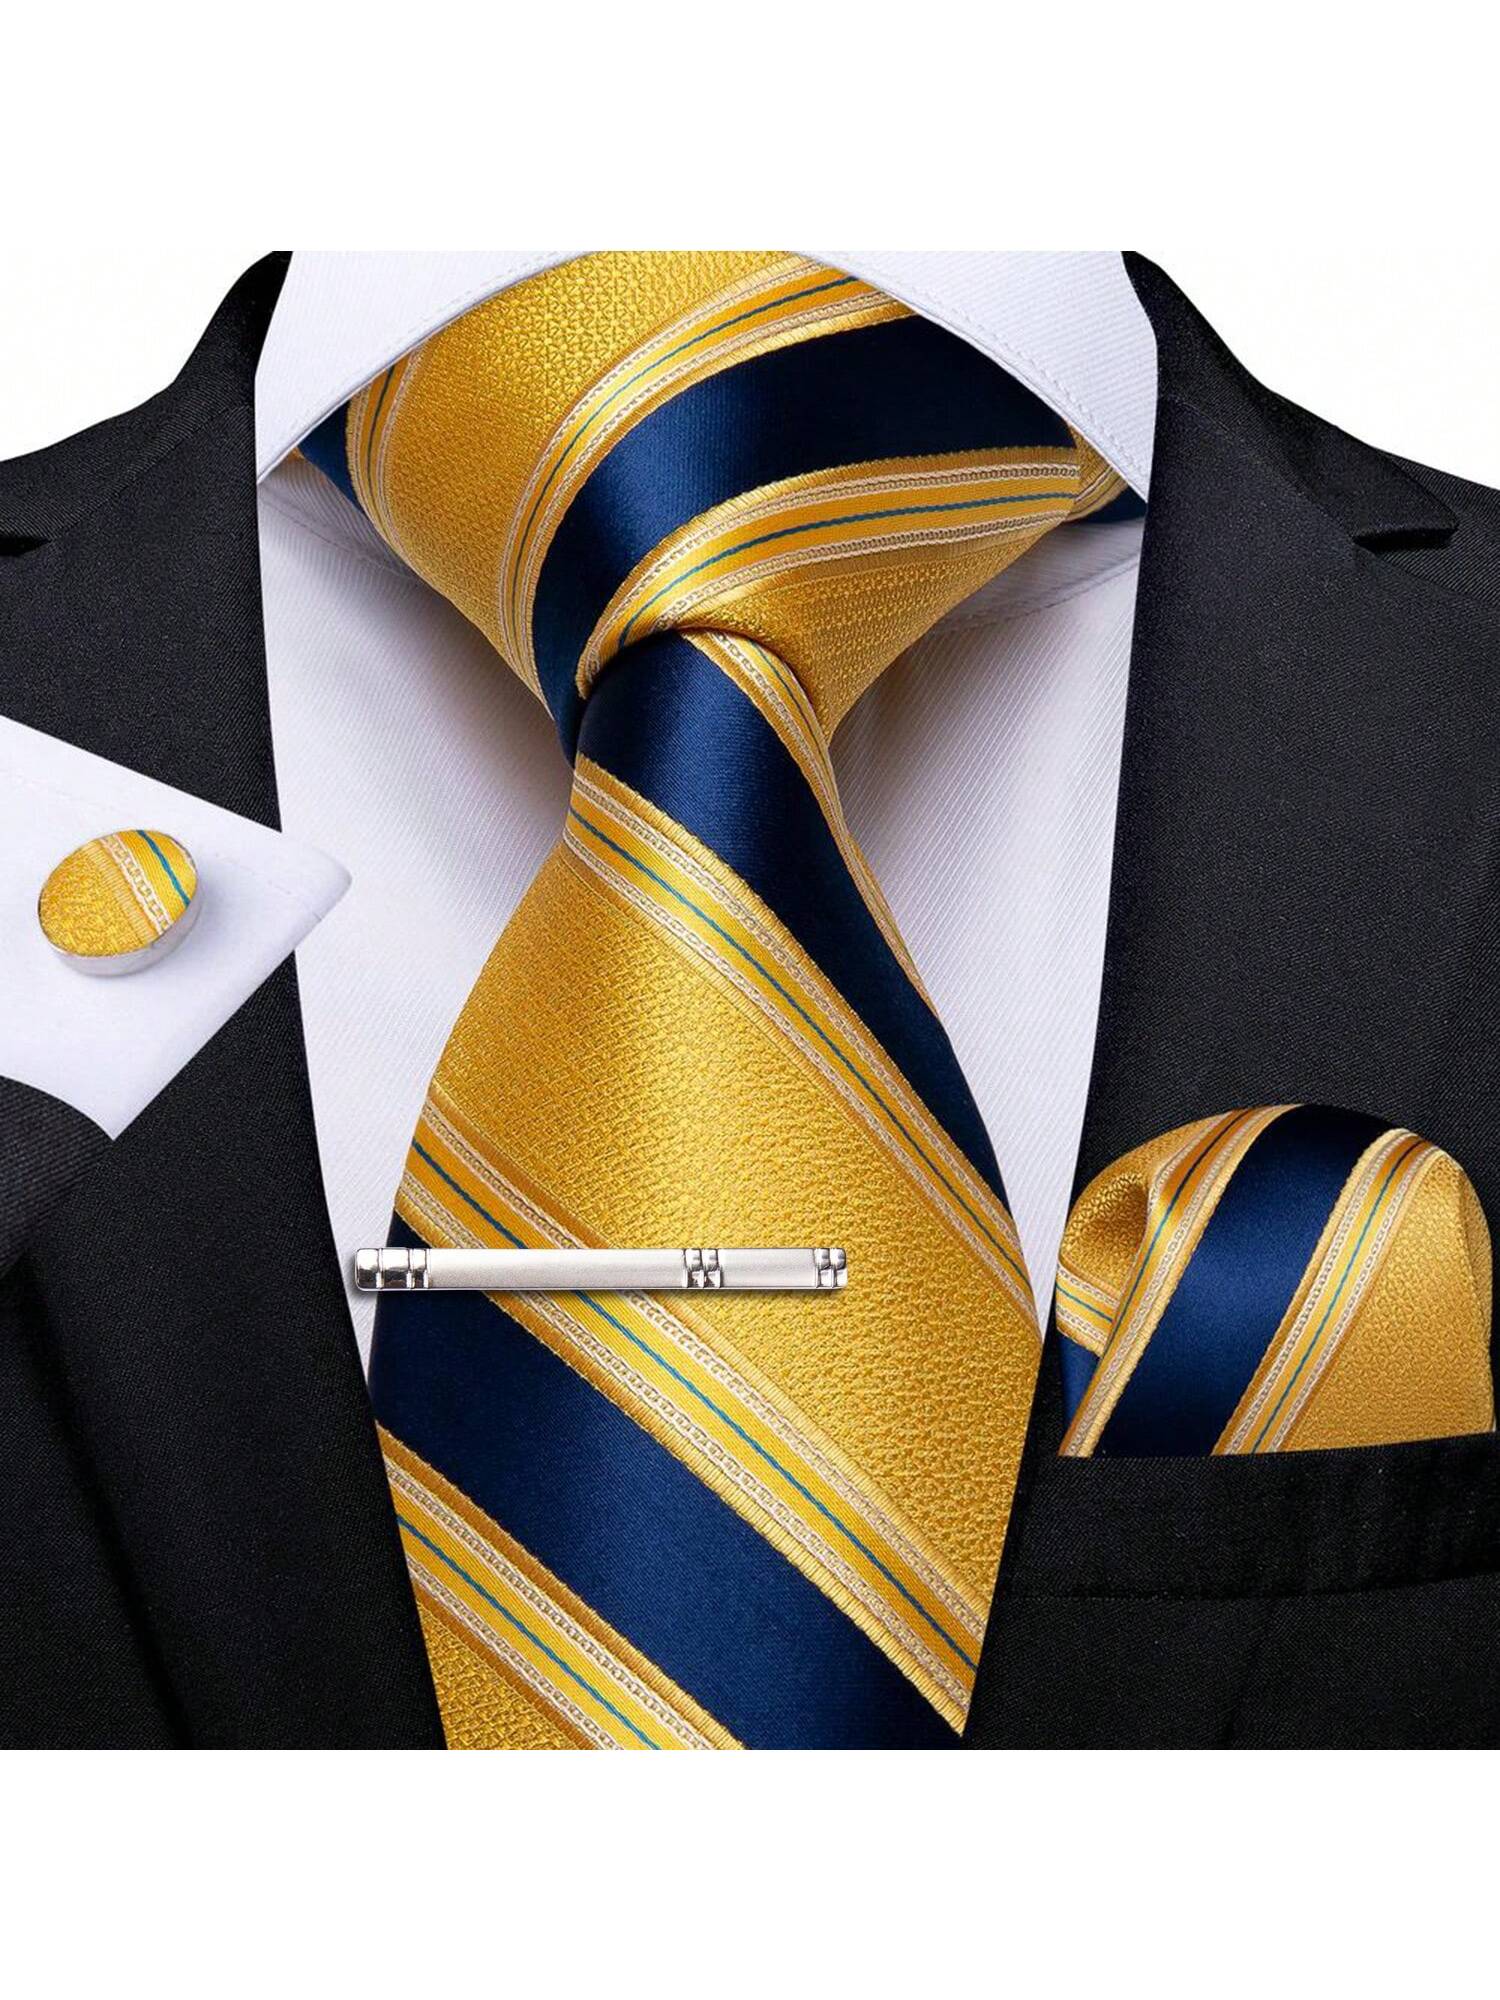 DiBanGu мужской галстук шелковый красный синий однотонный свадебный галстук карманные квадратные запонки зажим набор Пейсли, желтый темно синий шелковый галстук с классическим принтом chris